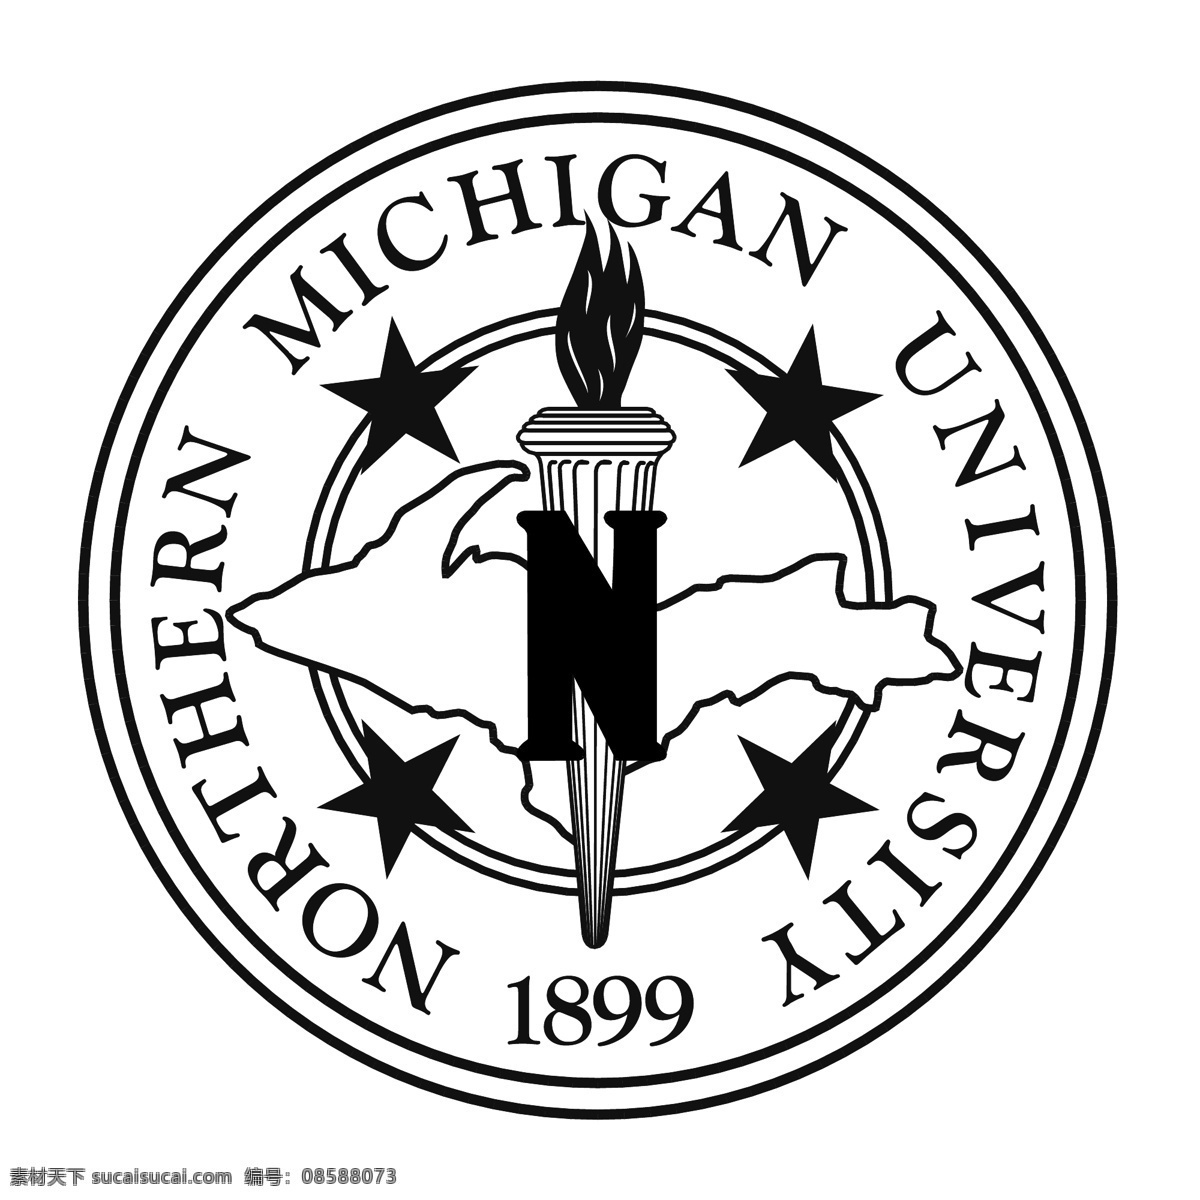 北 密歇根大学 大学 北部 密歇根北部 密歇根 矢量 北密歇根大学 logo 矢量图 建筑家居